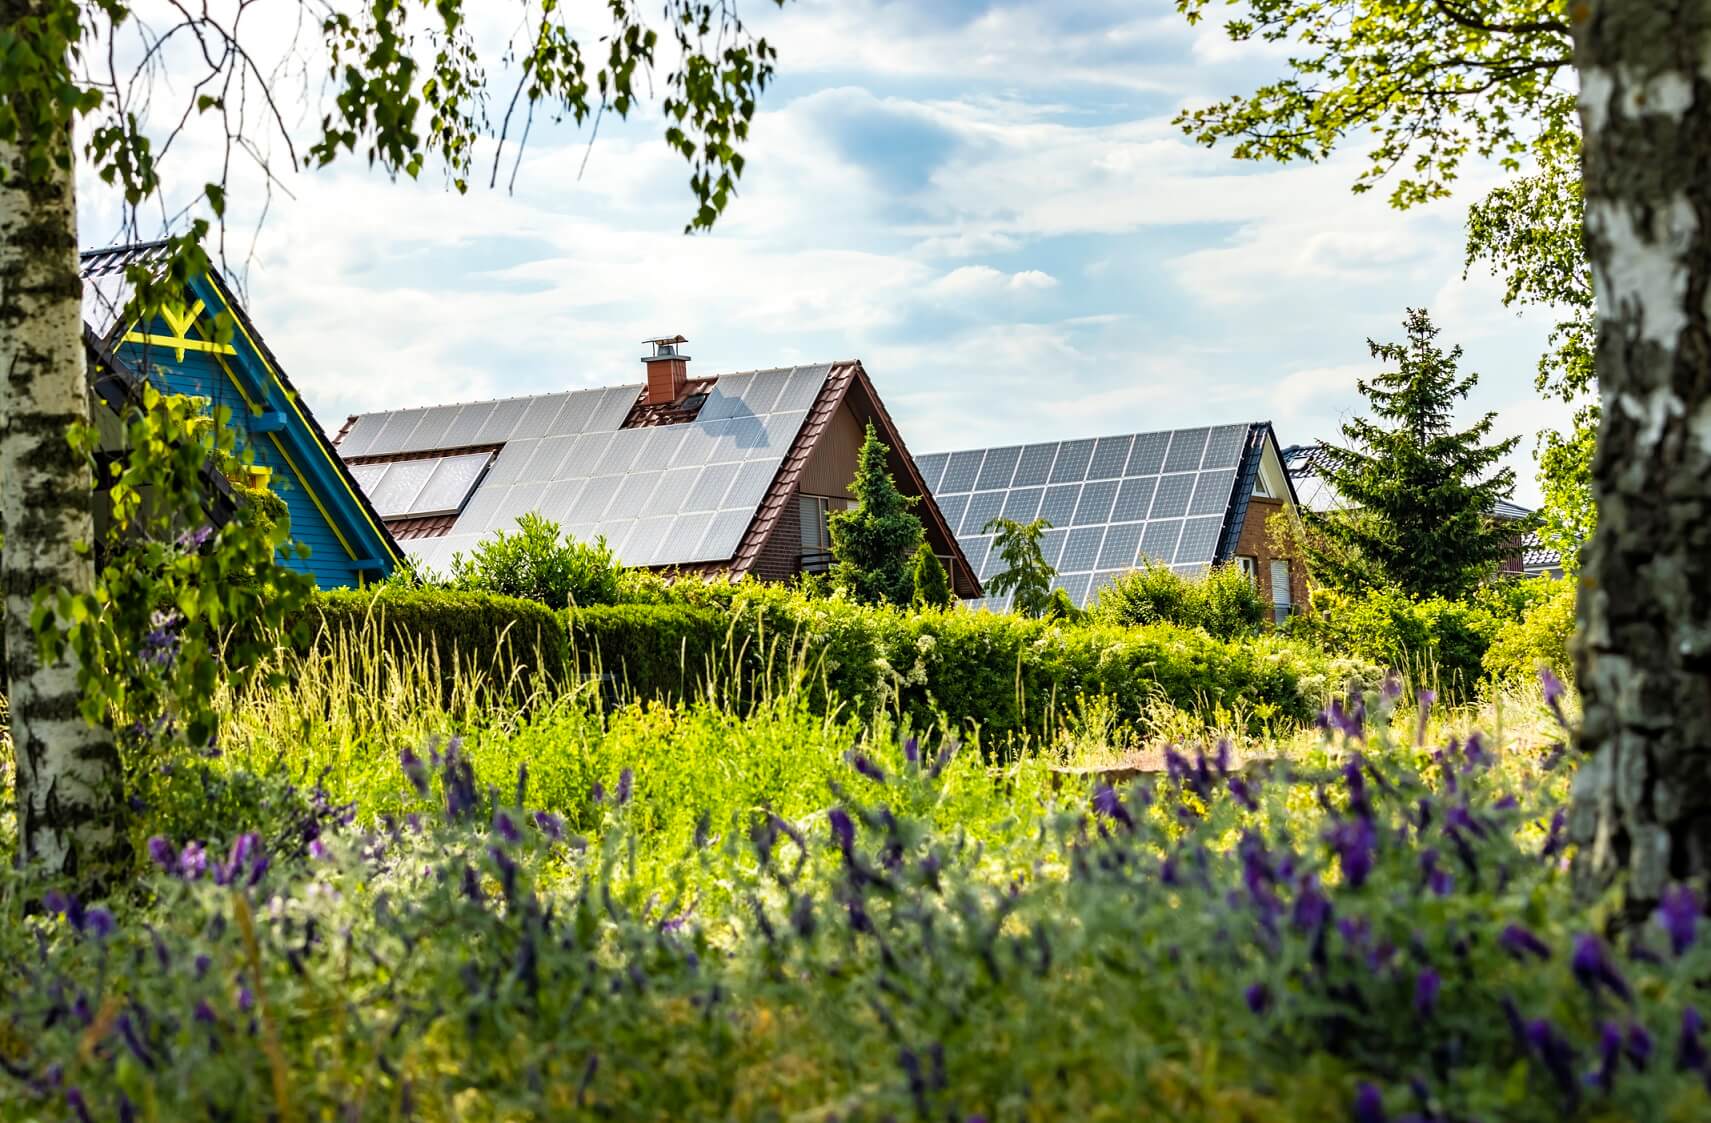 Mehrere Wohnhäuser mit Dächern, auf denen Solaranlagen installiert sind, mit grüner Wiese und Bäumen im Vordergrund unter blauem, leicht bewölktem Himmel